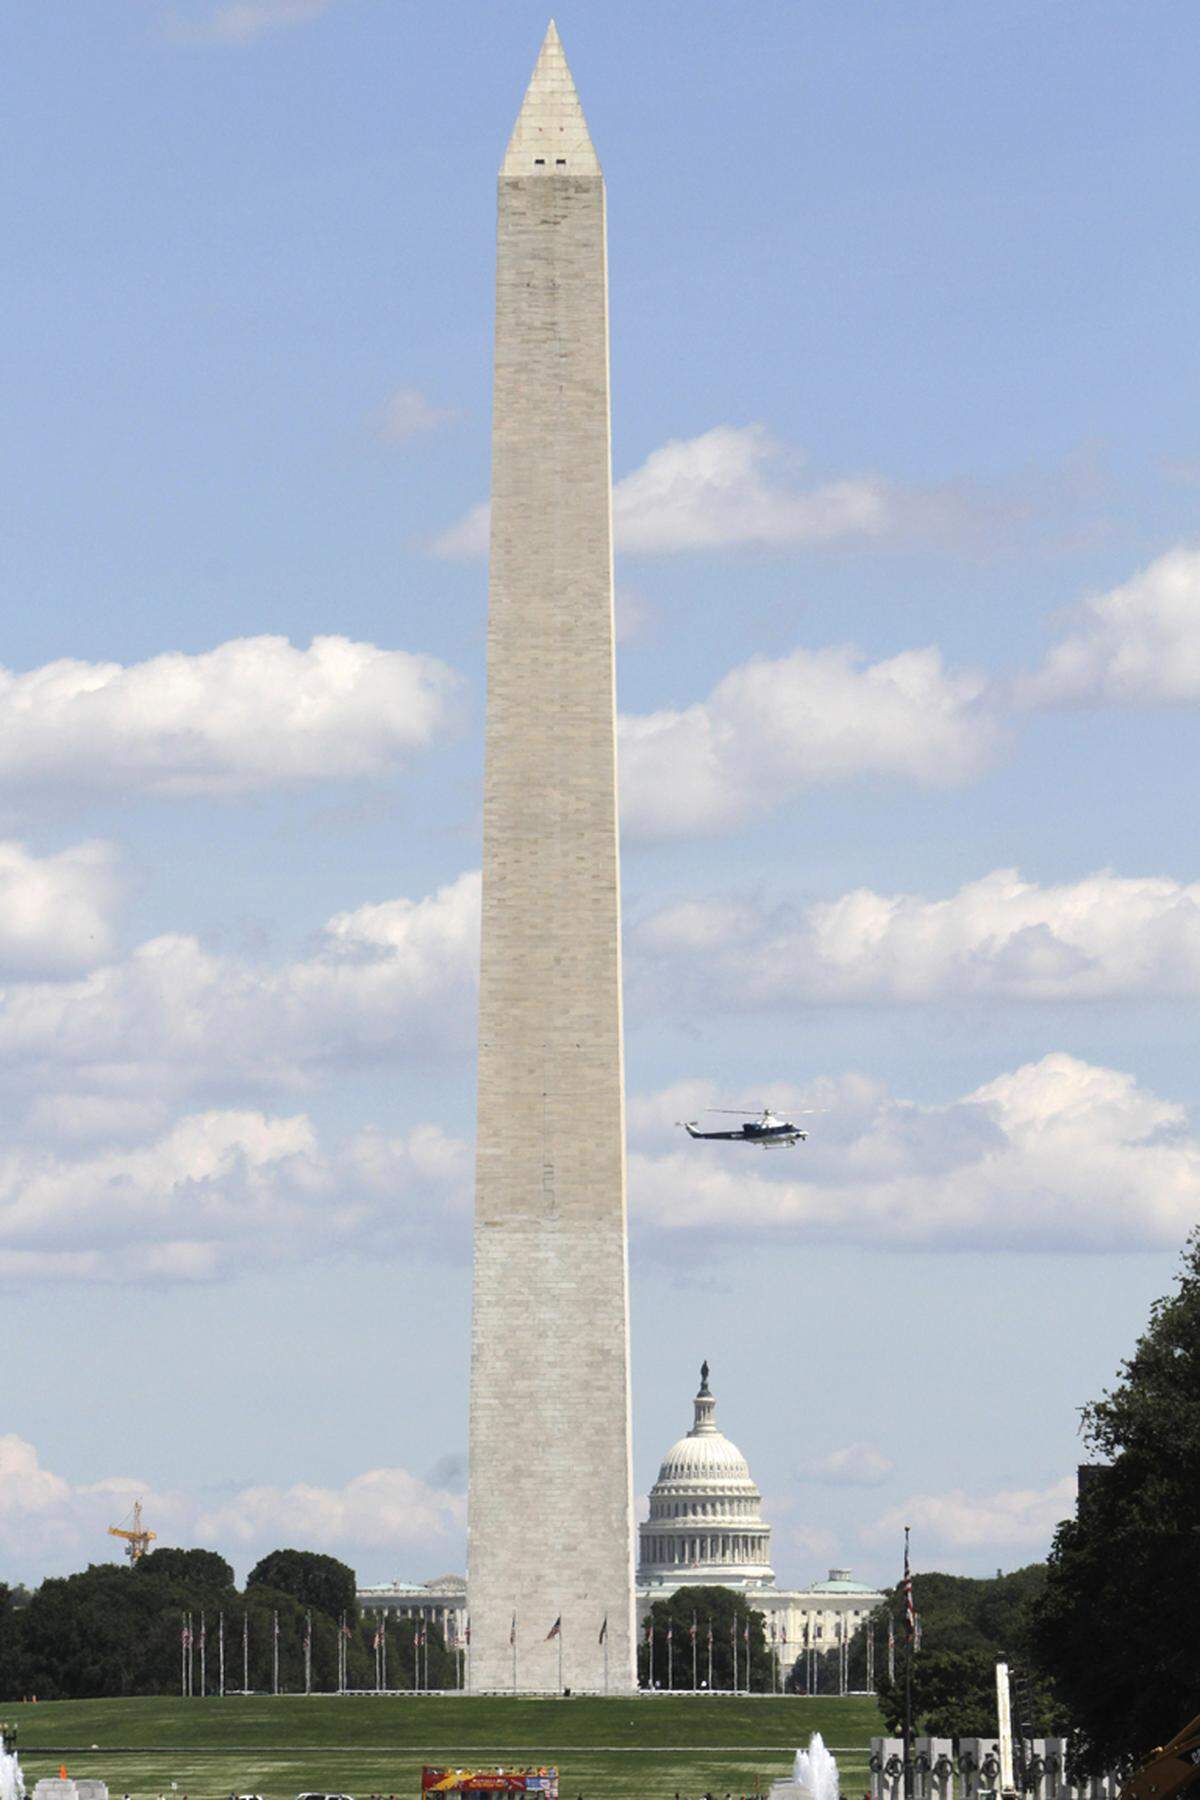 Ebenfalls beschädigt wurde offenbar das Washington Monument. Am oberen Teil des knapp 170 Meter hohen Marmor-Obelisken sei ein Riss entdeckt worden, teilte das National Park Service mit. Das Bauwerk wurde bis auf weiteres aus Sicherheitsgründen geschlossen.